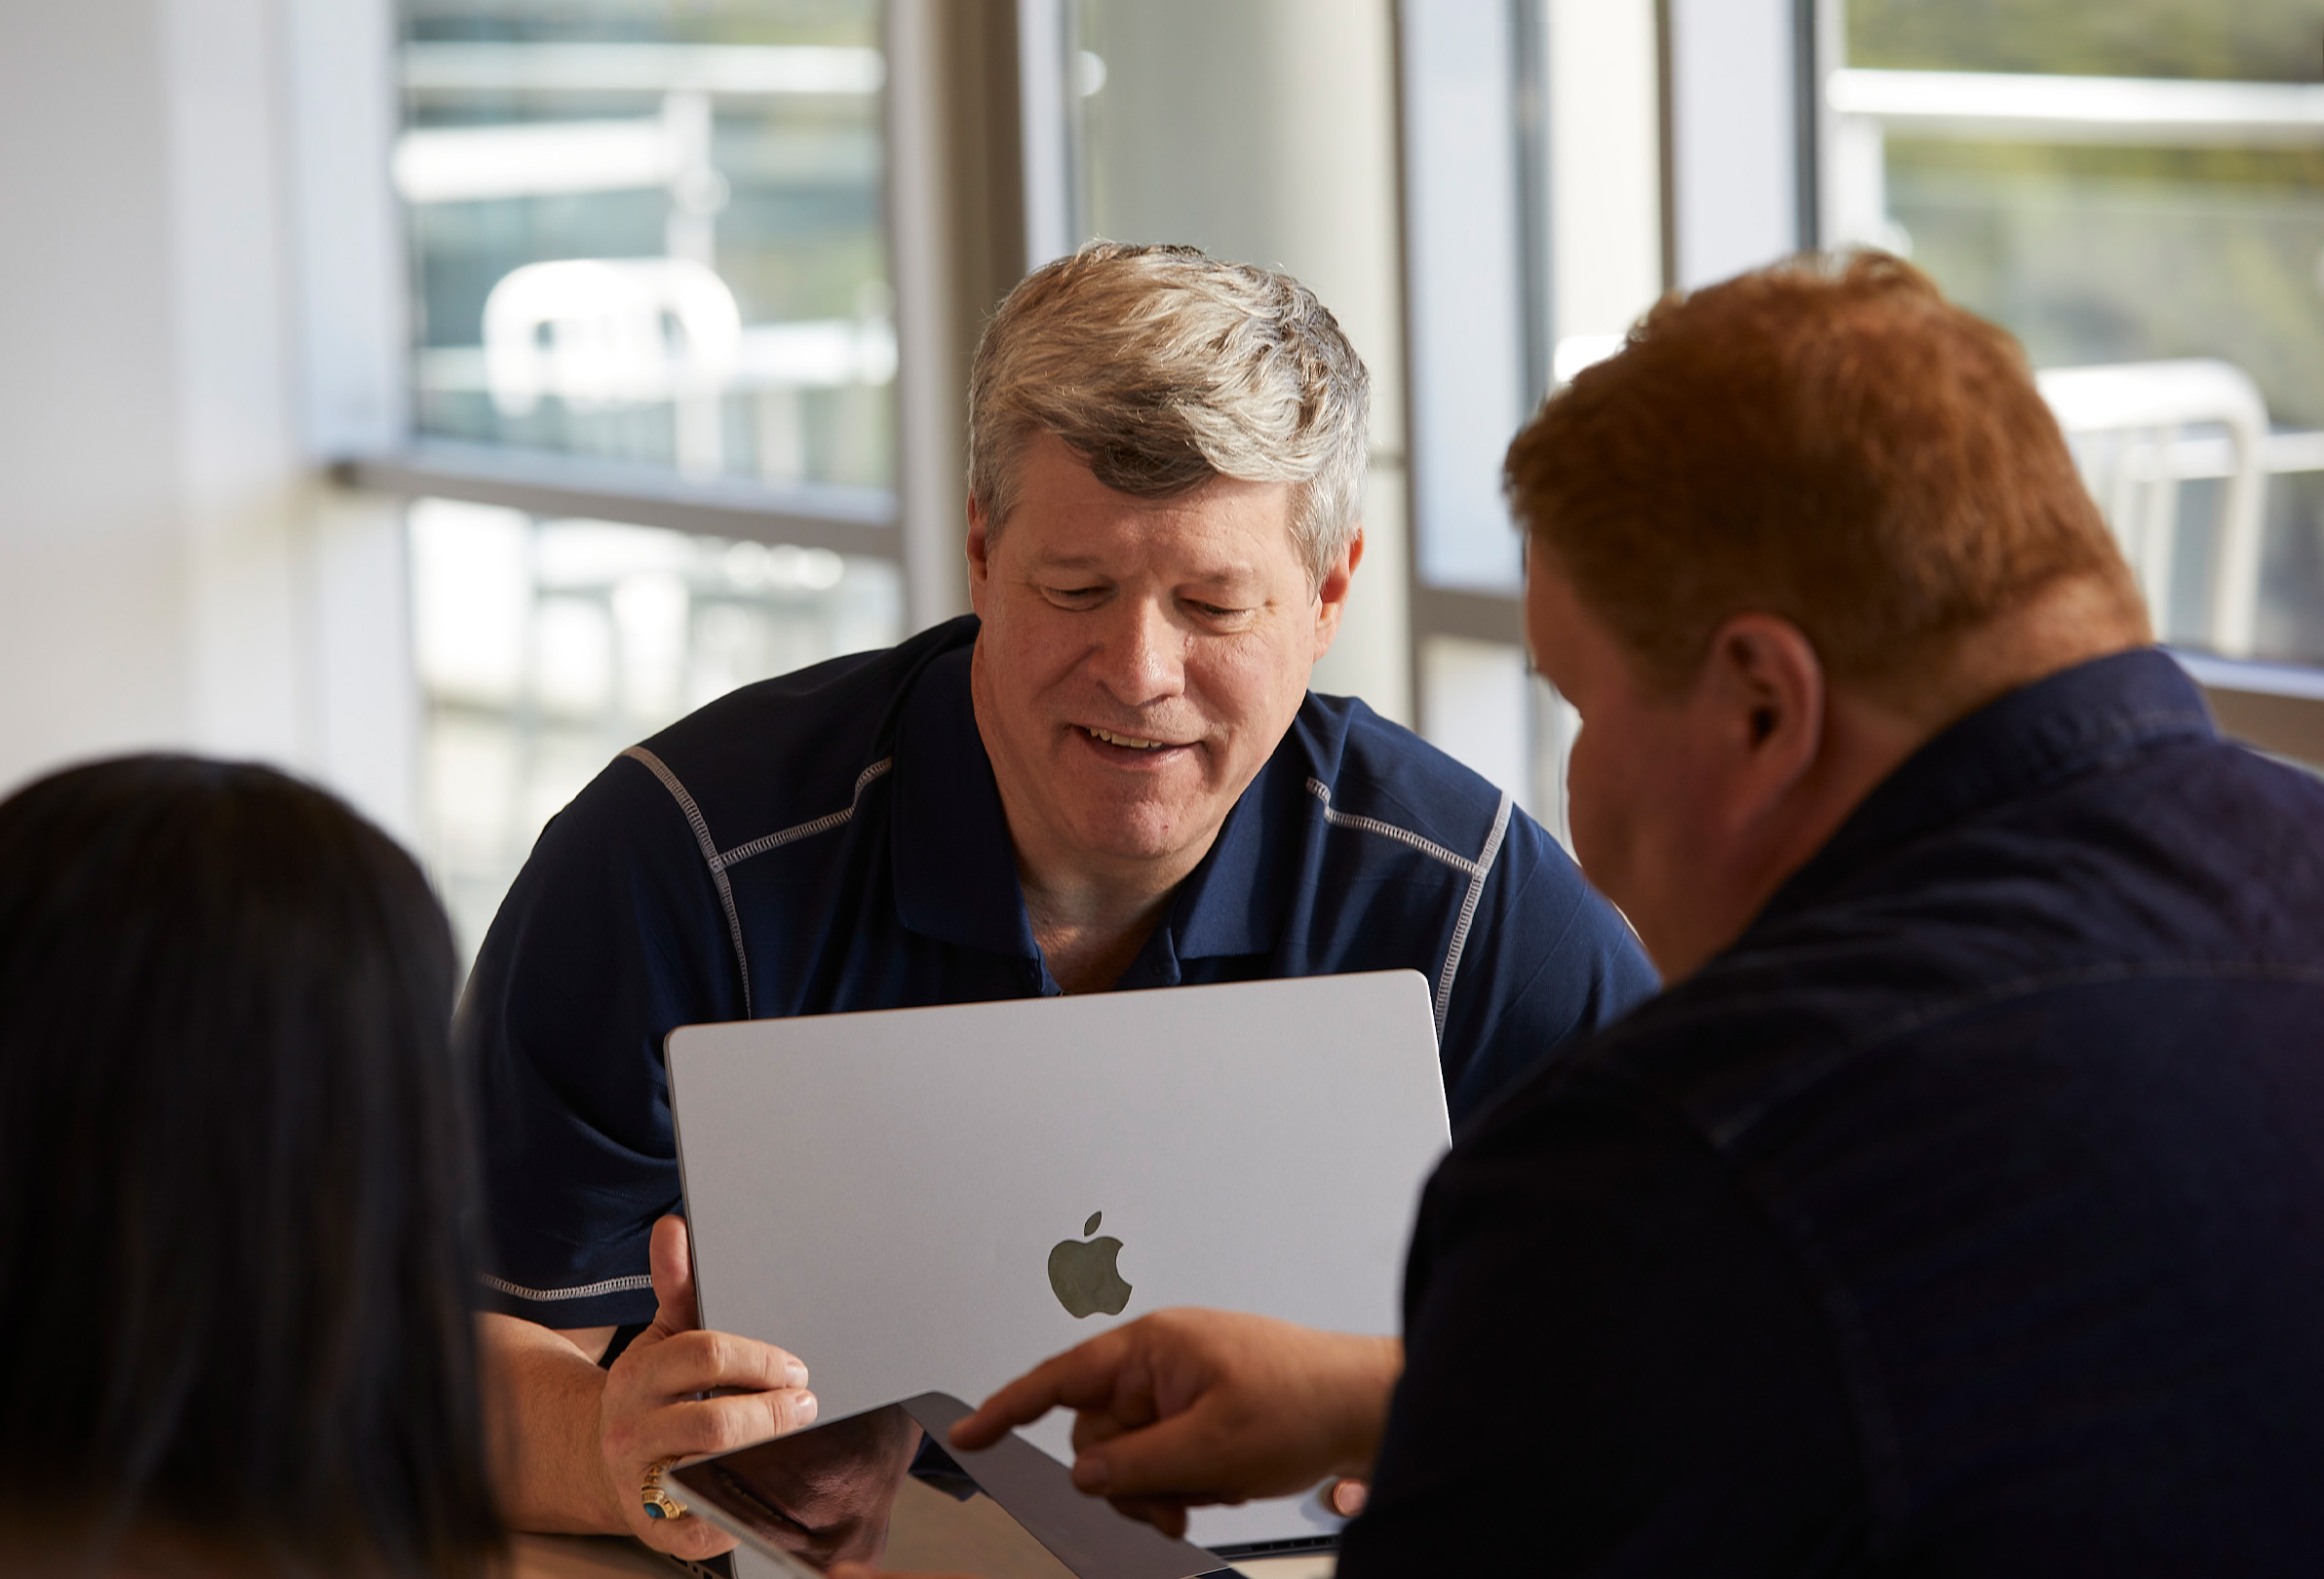 MacBookとiPadを使って共同作業をしている3人のApple社員。